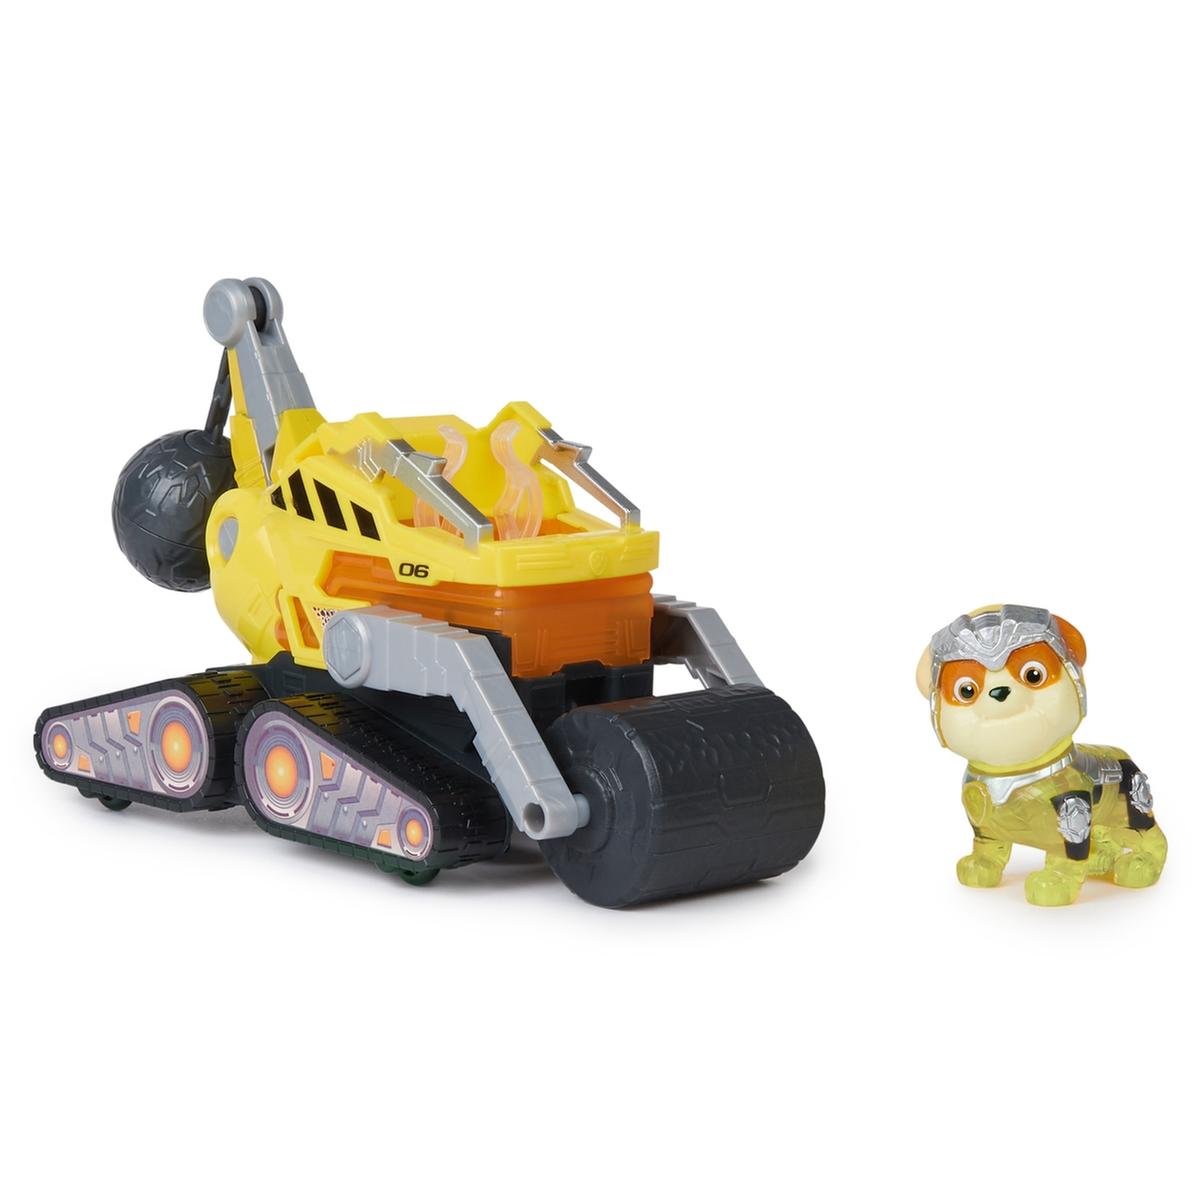 Energía - Patrulla Canina - Camión de construcción de juguete con